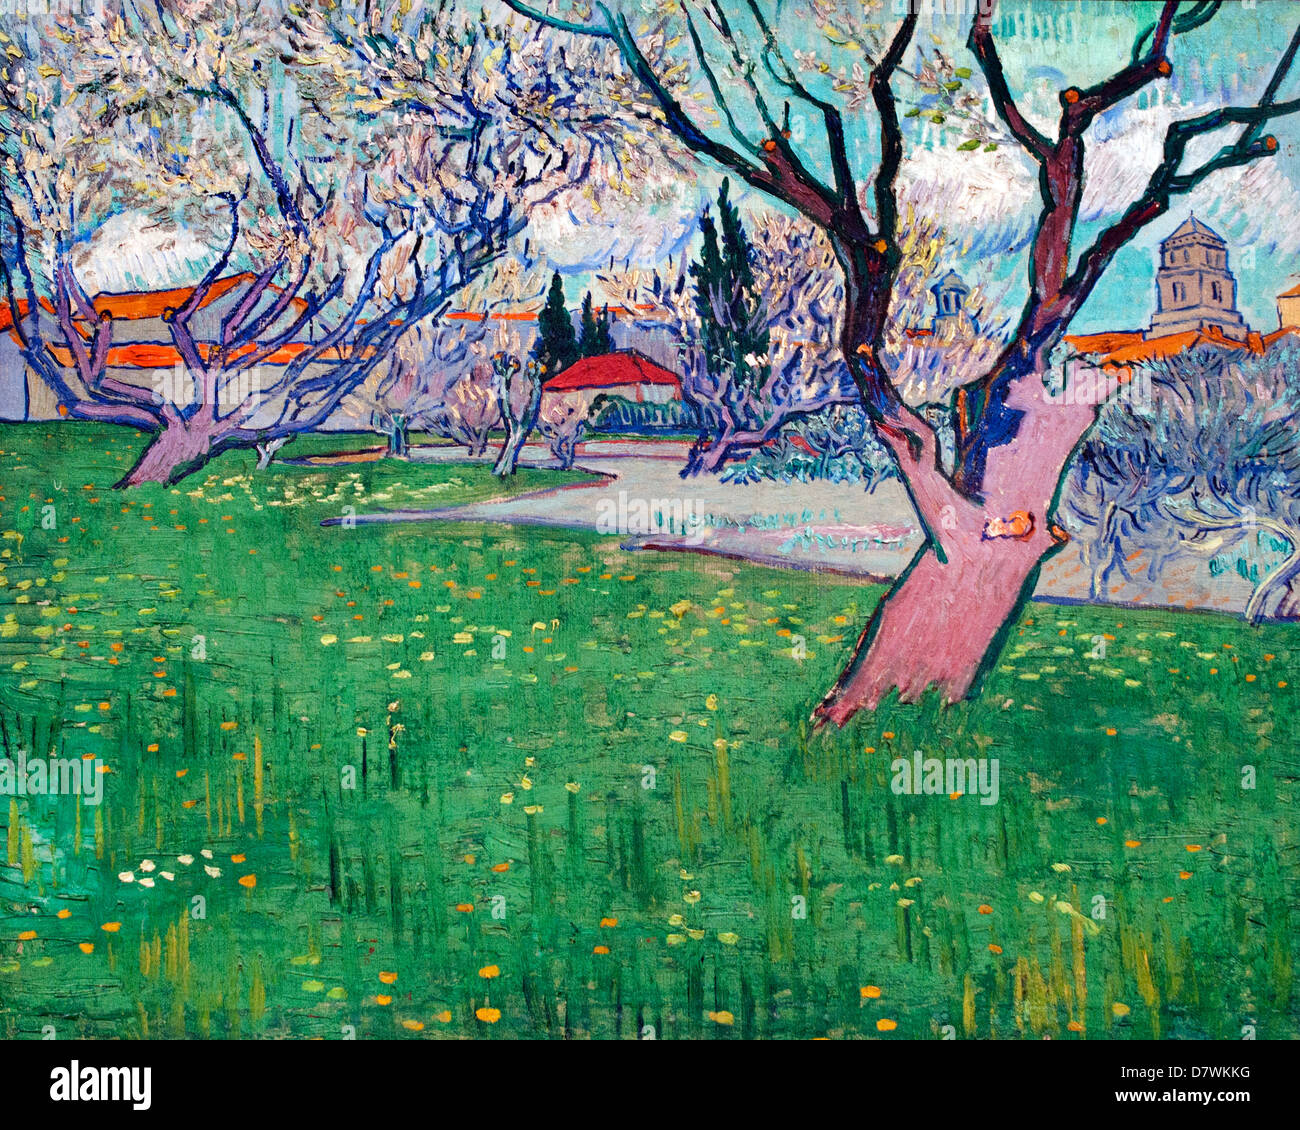 Vergers en fleurs vue d'Arles 1889 Vincent van Gogh 1853 - 1890 Pays-Bas néerlandais post impressionnisme Banque D'Images